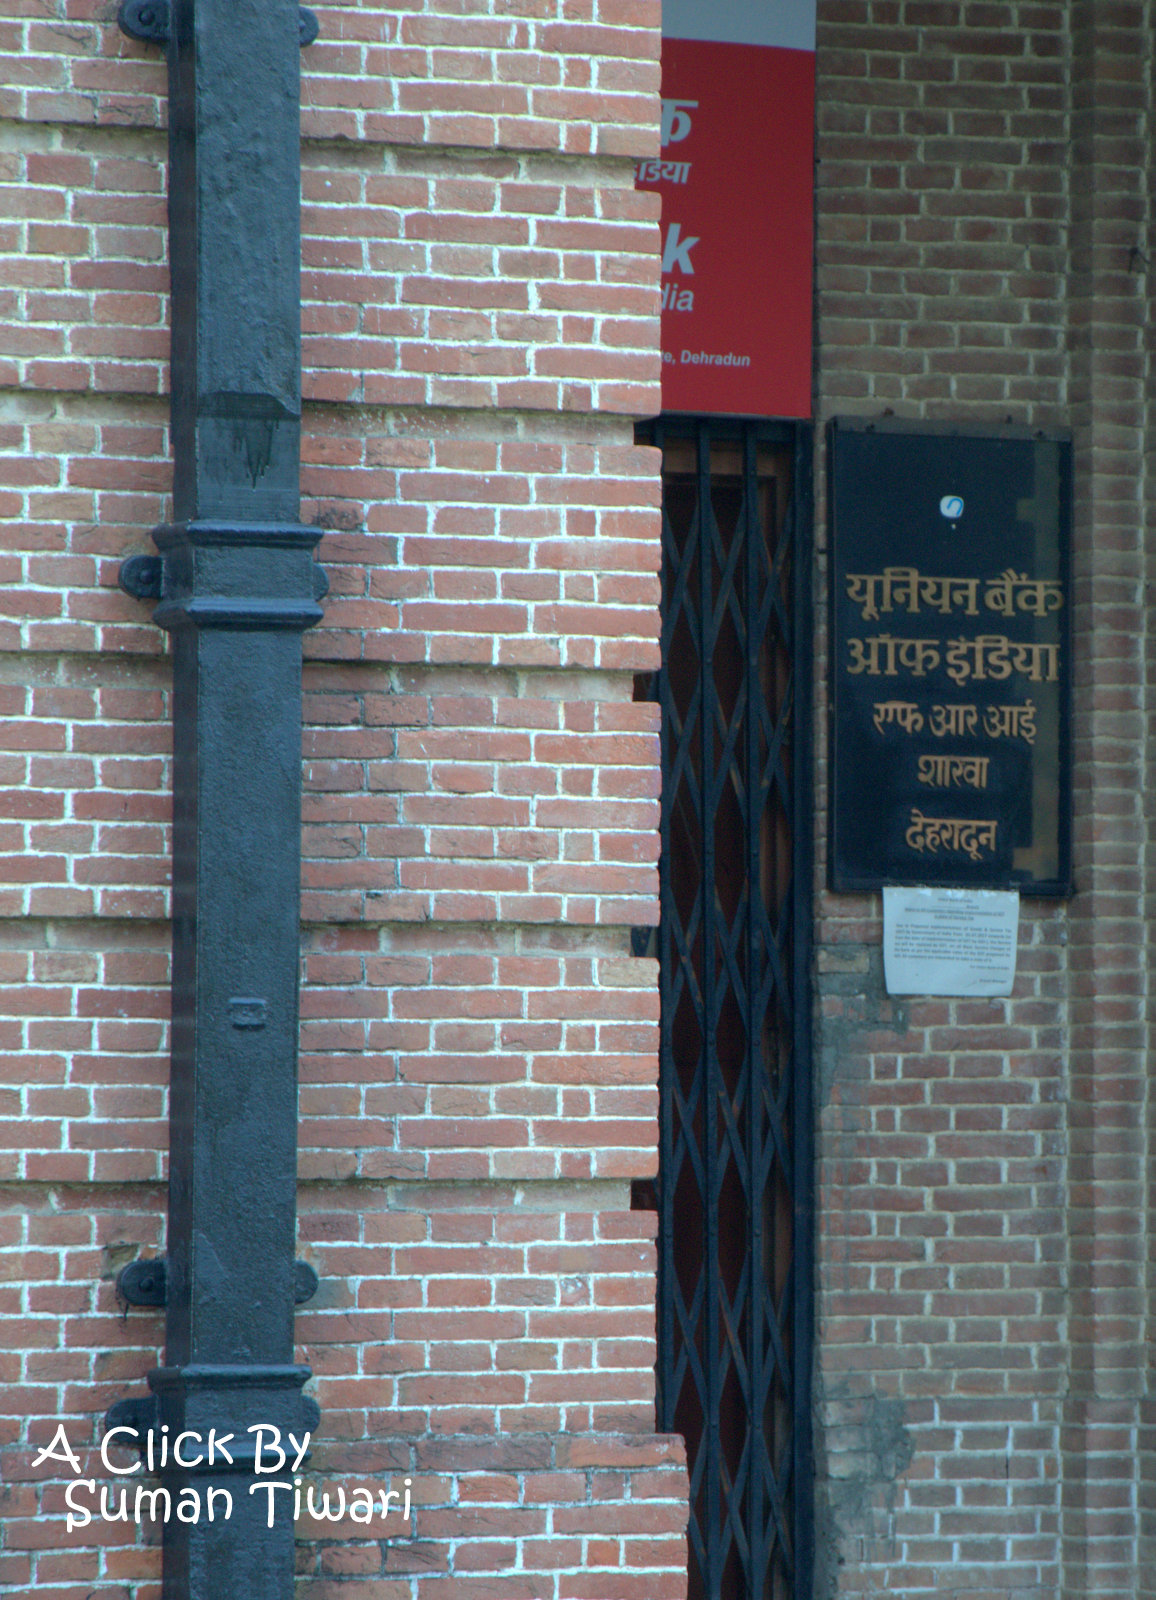 Union Bank of India, FRI 